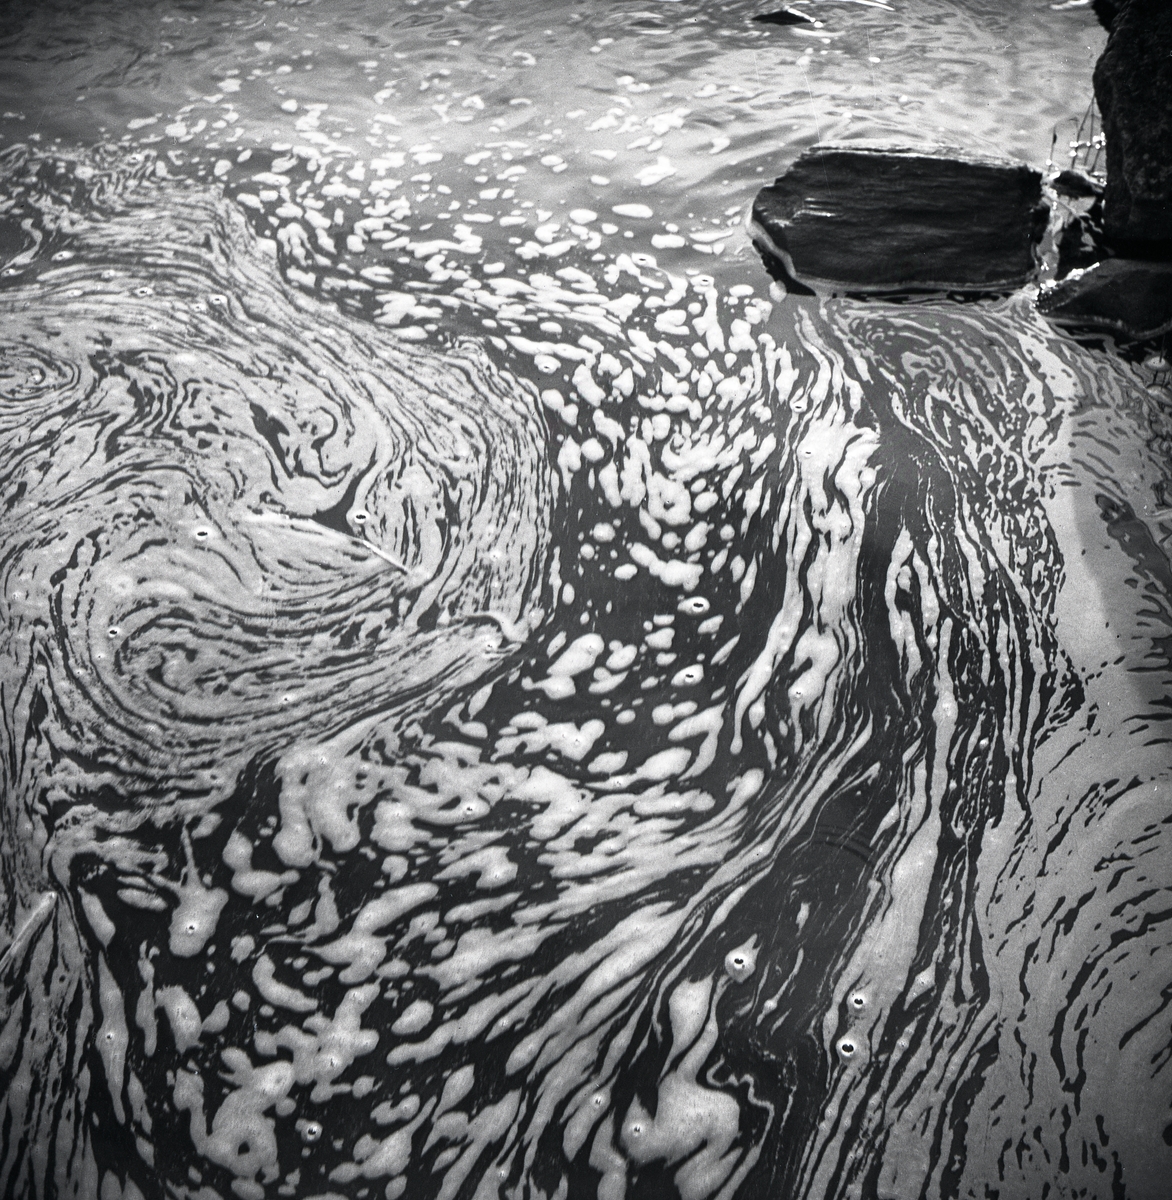 Vattenskum bildar ett mönster på vattnet i trakterna runt Knyssla den 1 maj 1959.